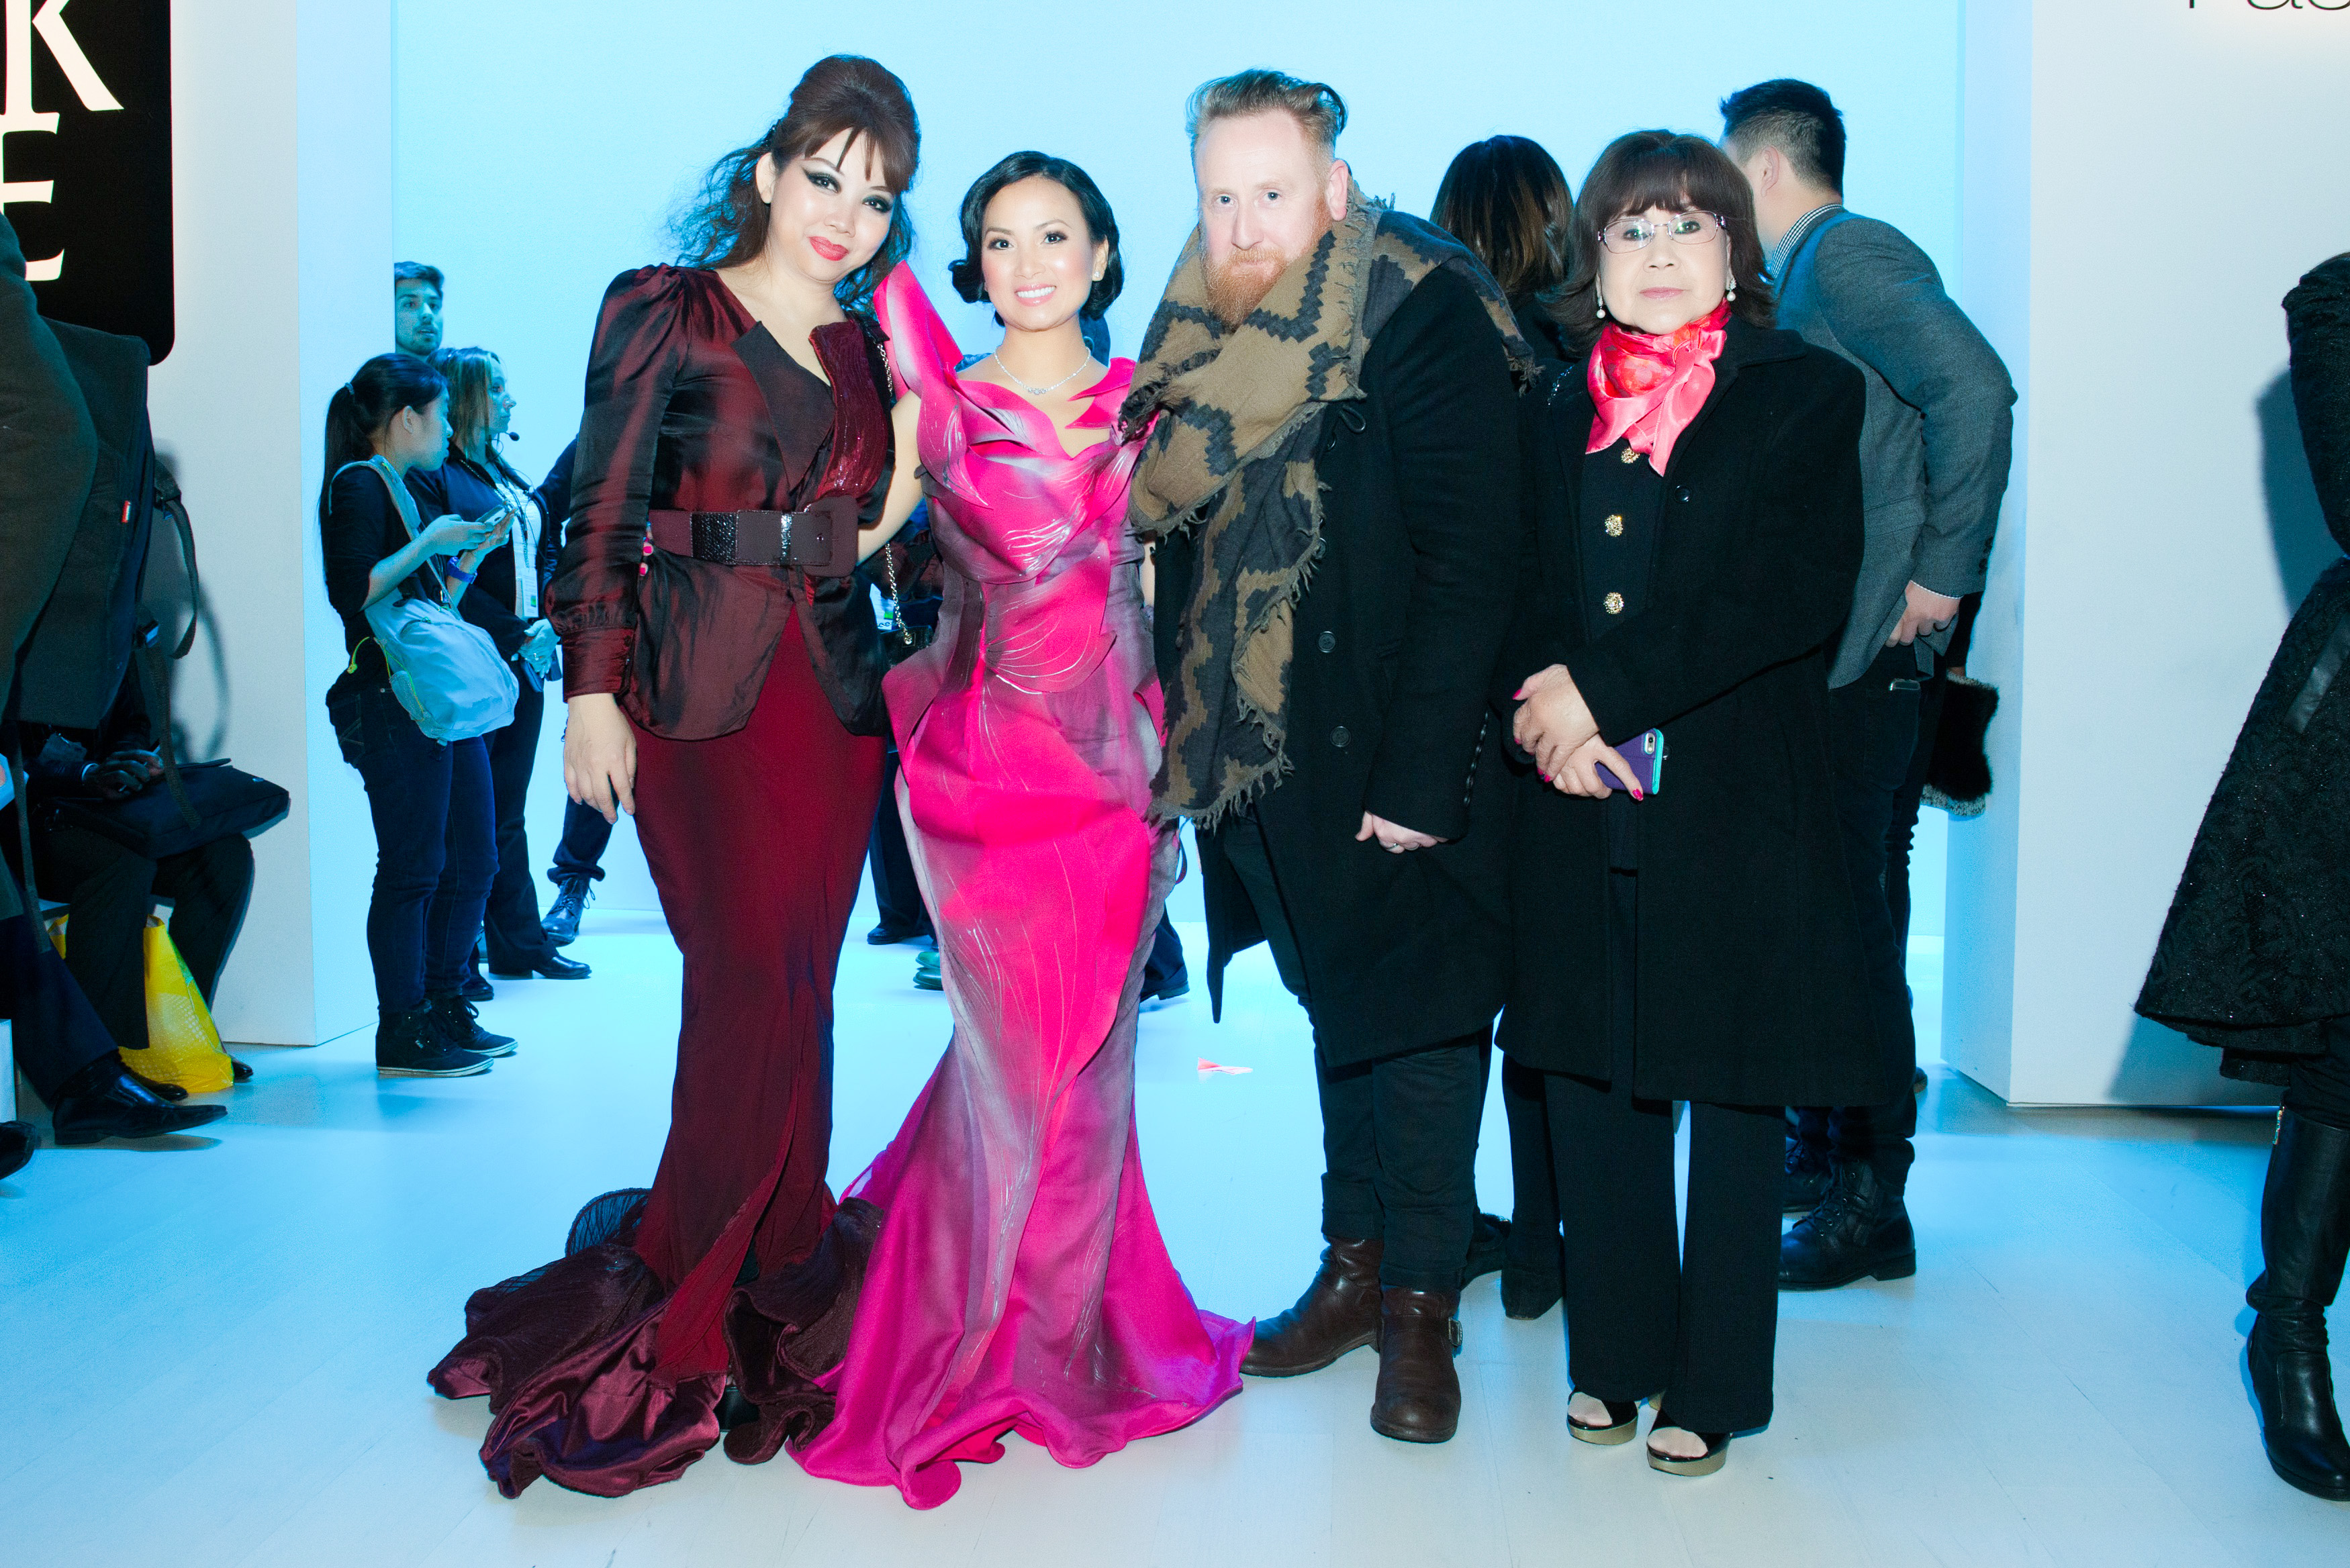 Ha Phuong at New York Fashion week 2015 .